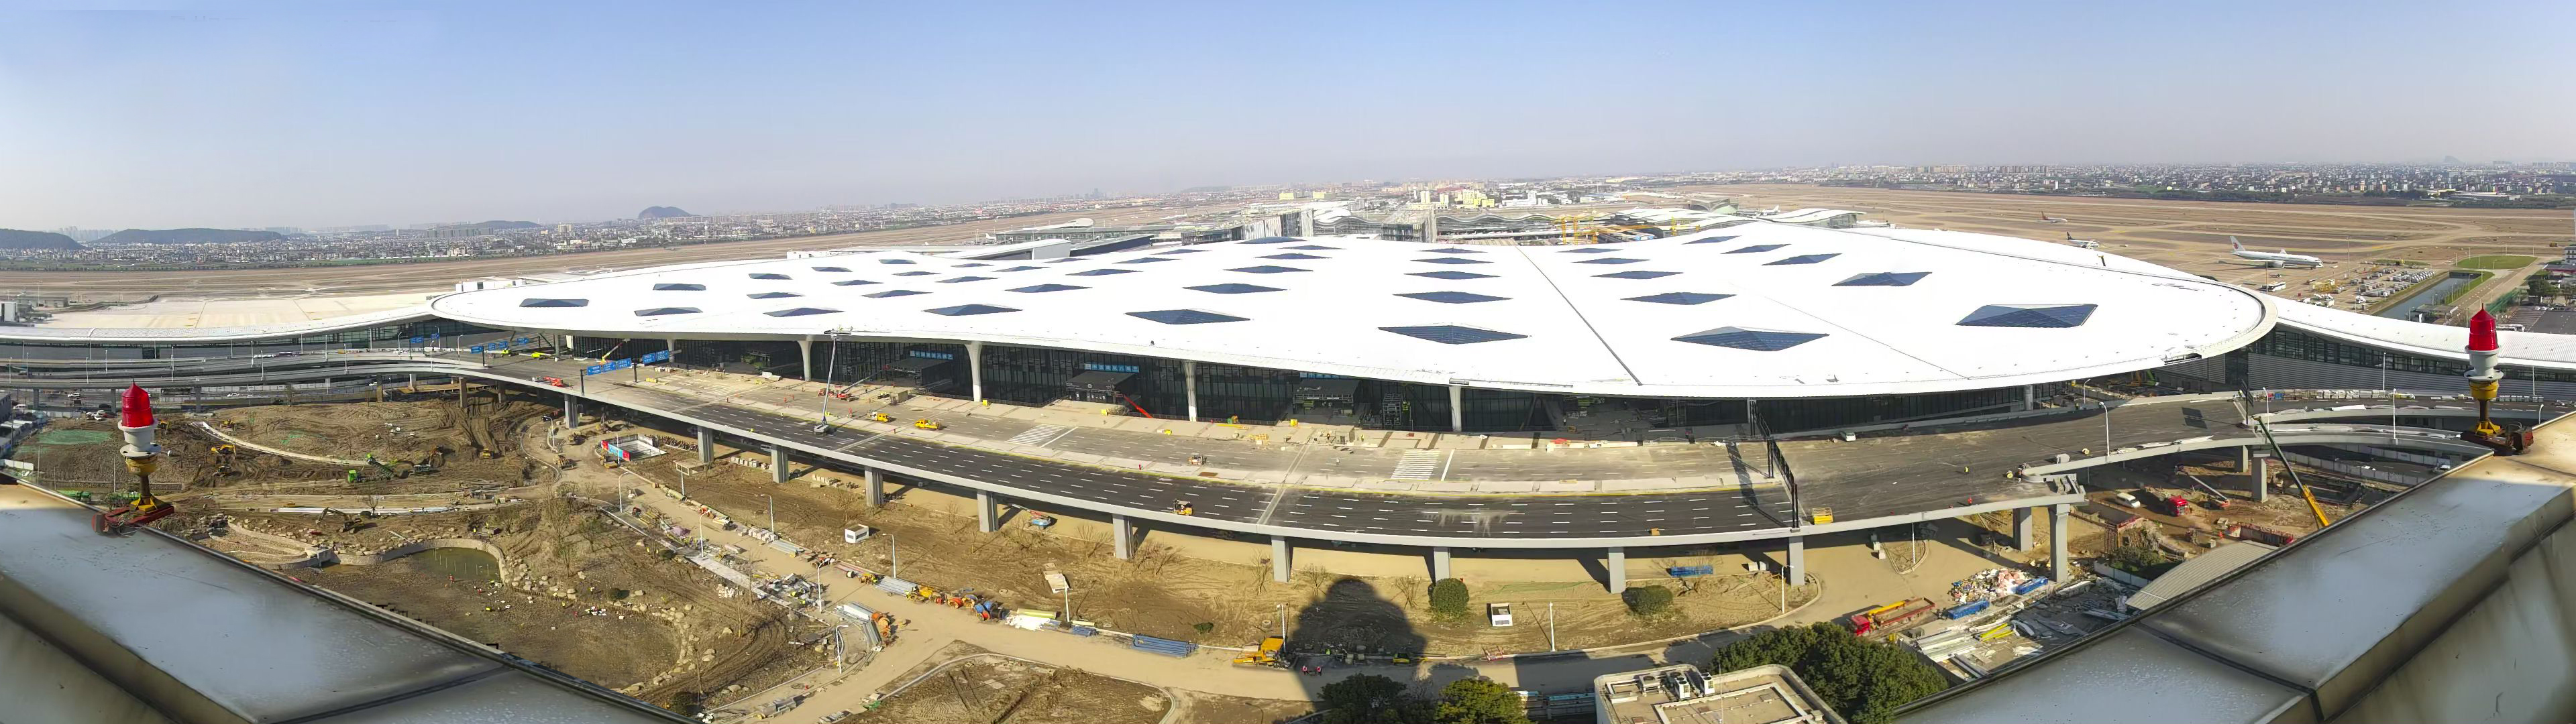 杭州萧山国际机场三期项目经过竣工检验